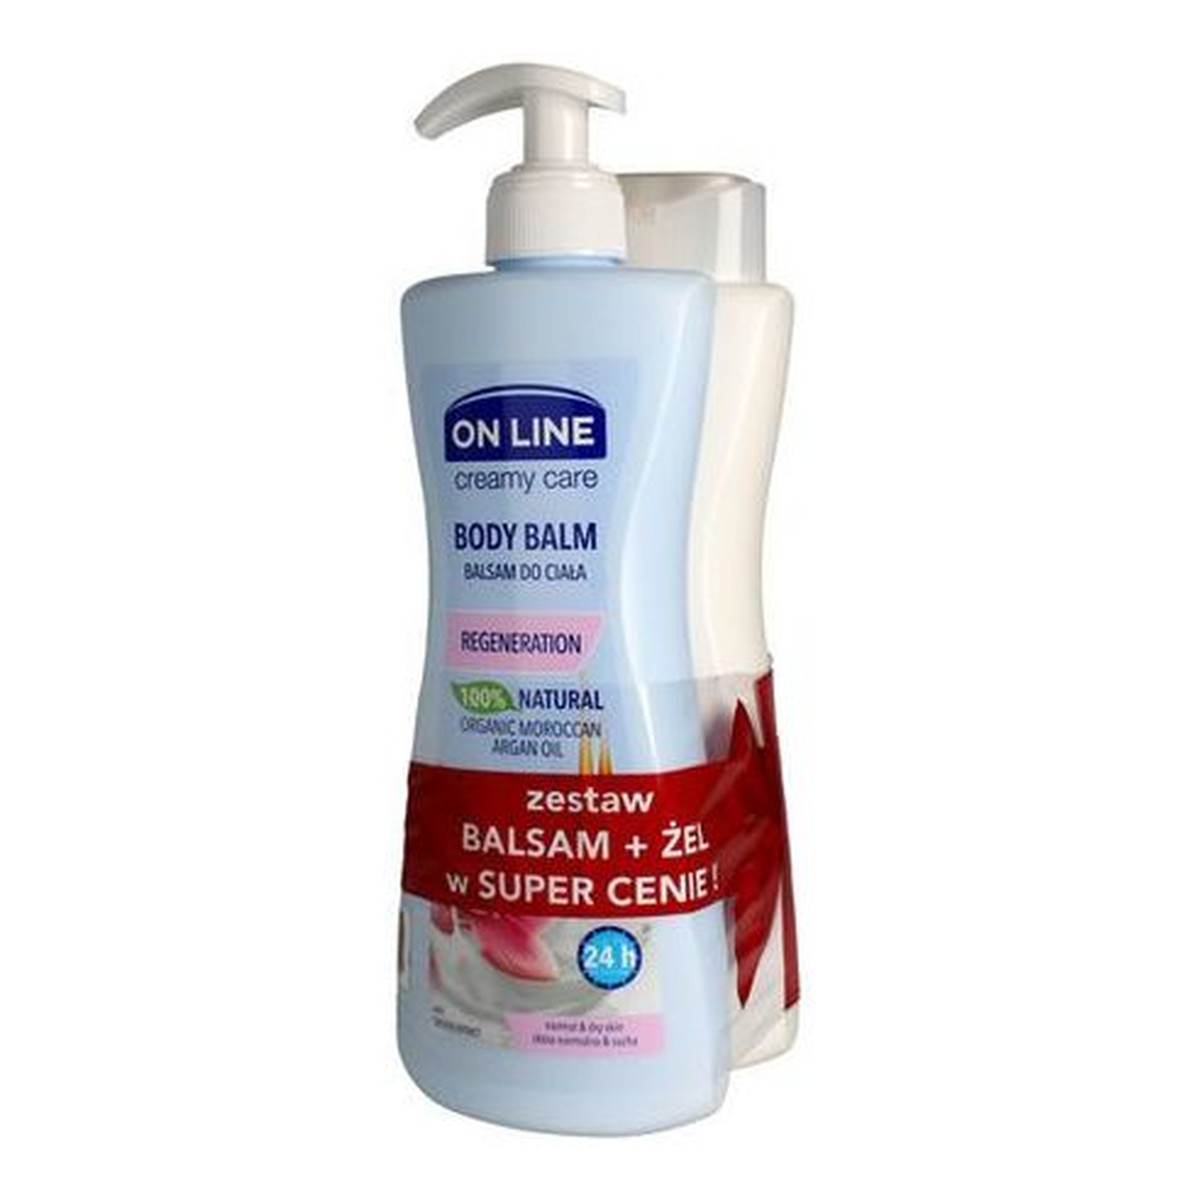 On Line Creamy Care DUO Olej Arganowy balsam do ciała +żel pod prysznic